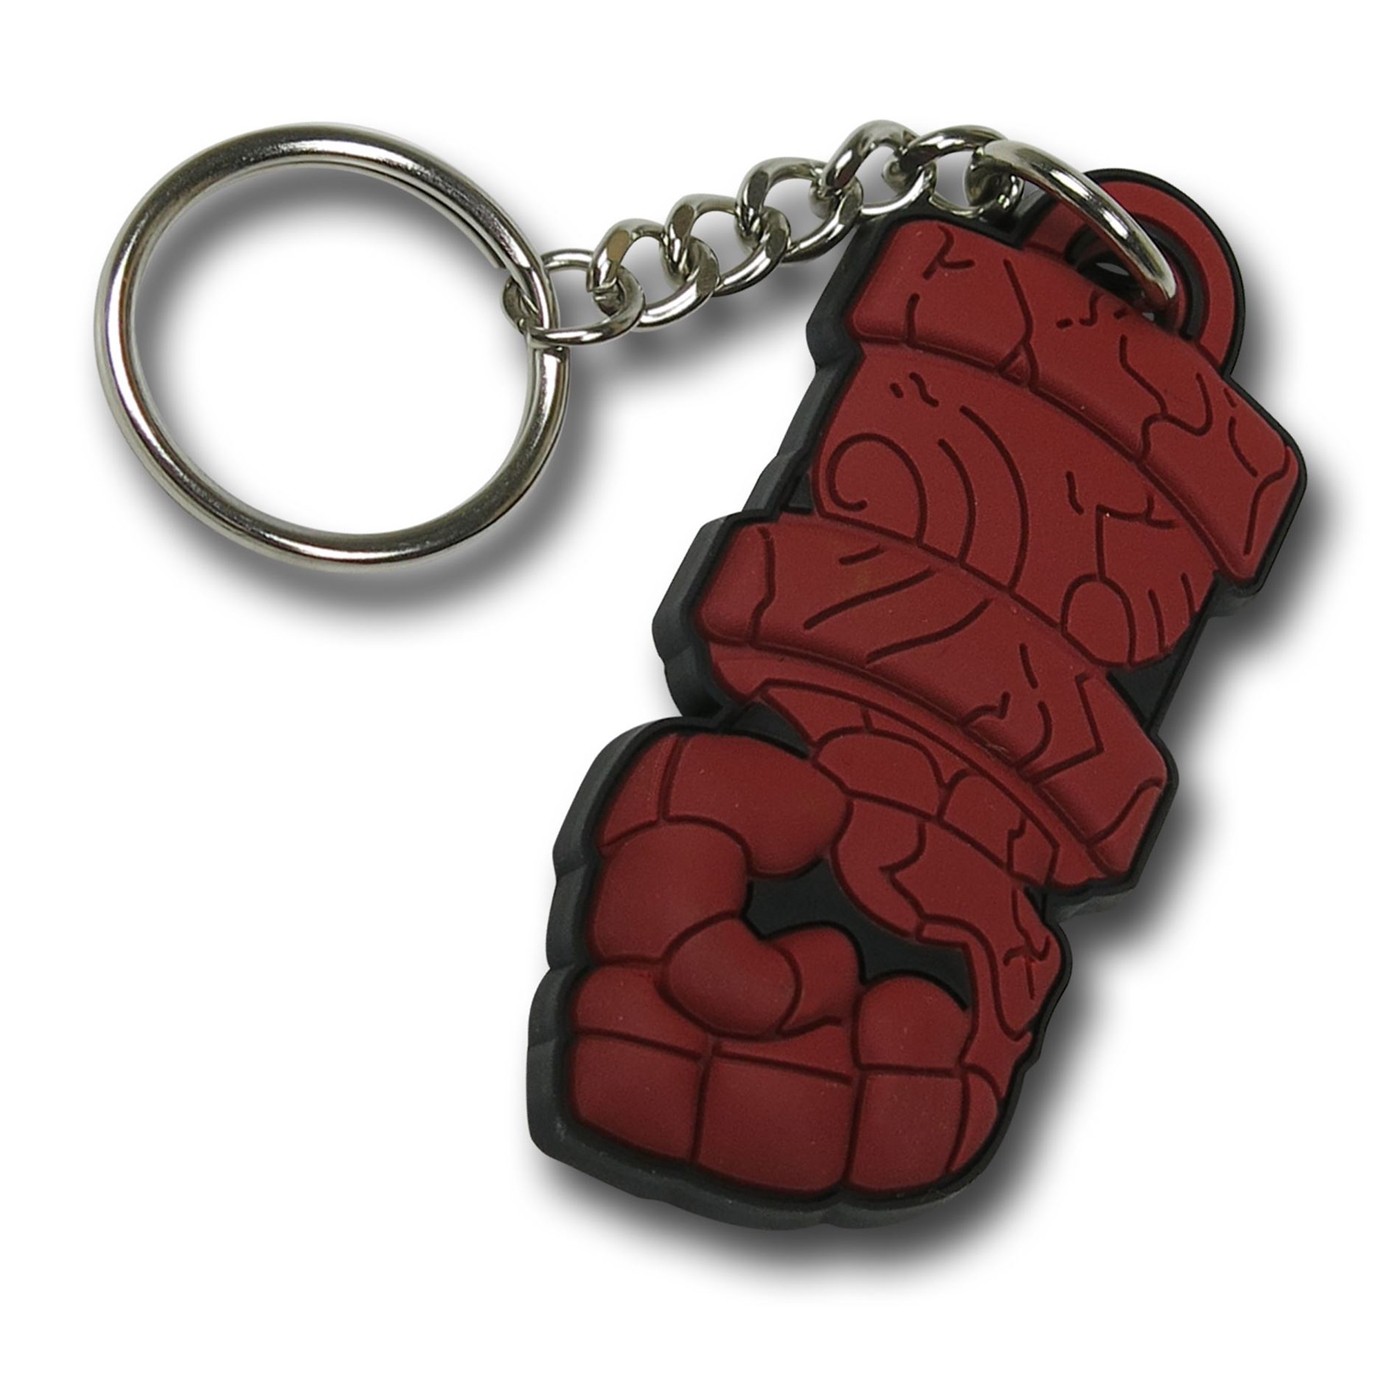 Hellboy Fist Keychain